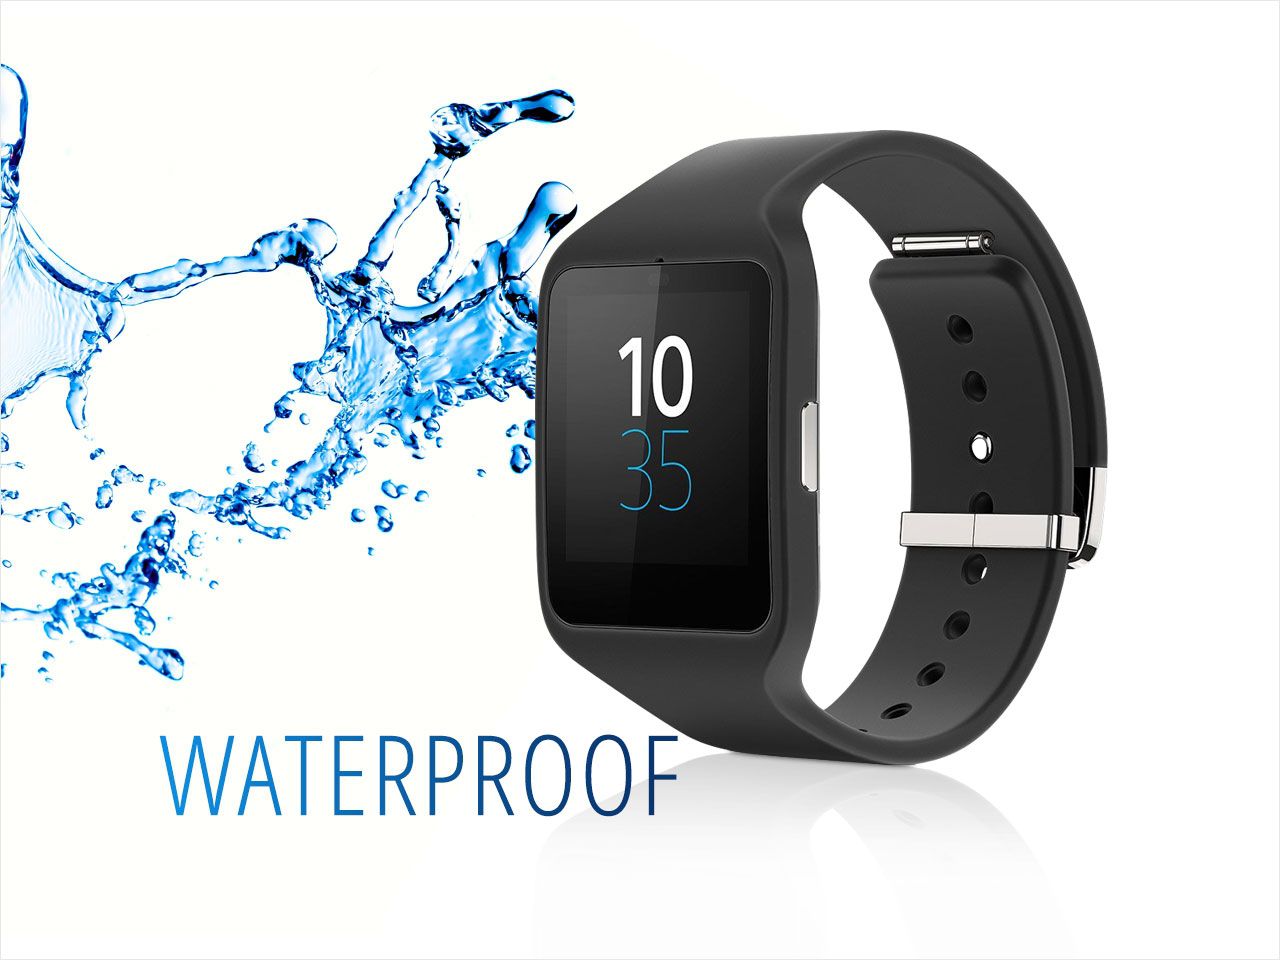 La smart watch 3 Sony SWR50 est une montre connectée waterproof avec un indice de protection IP68